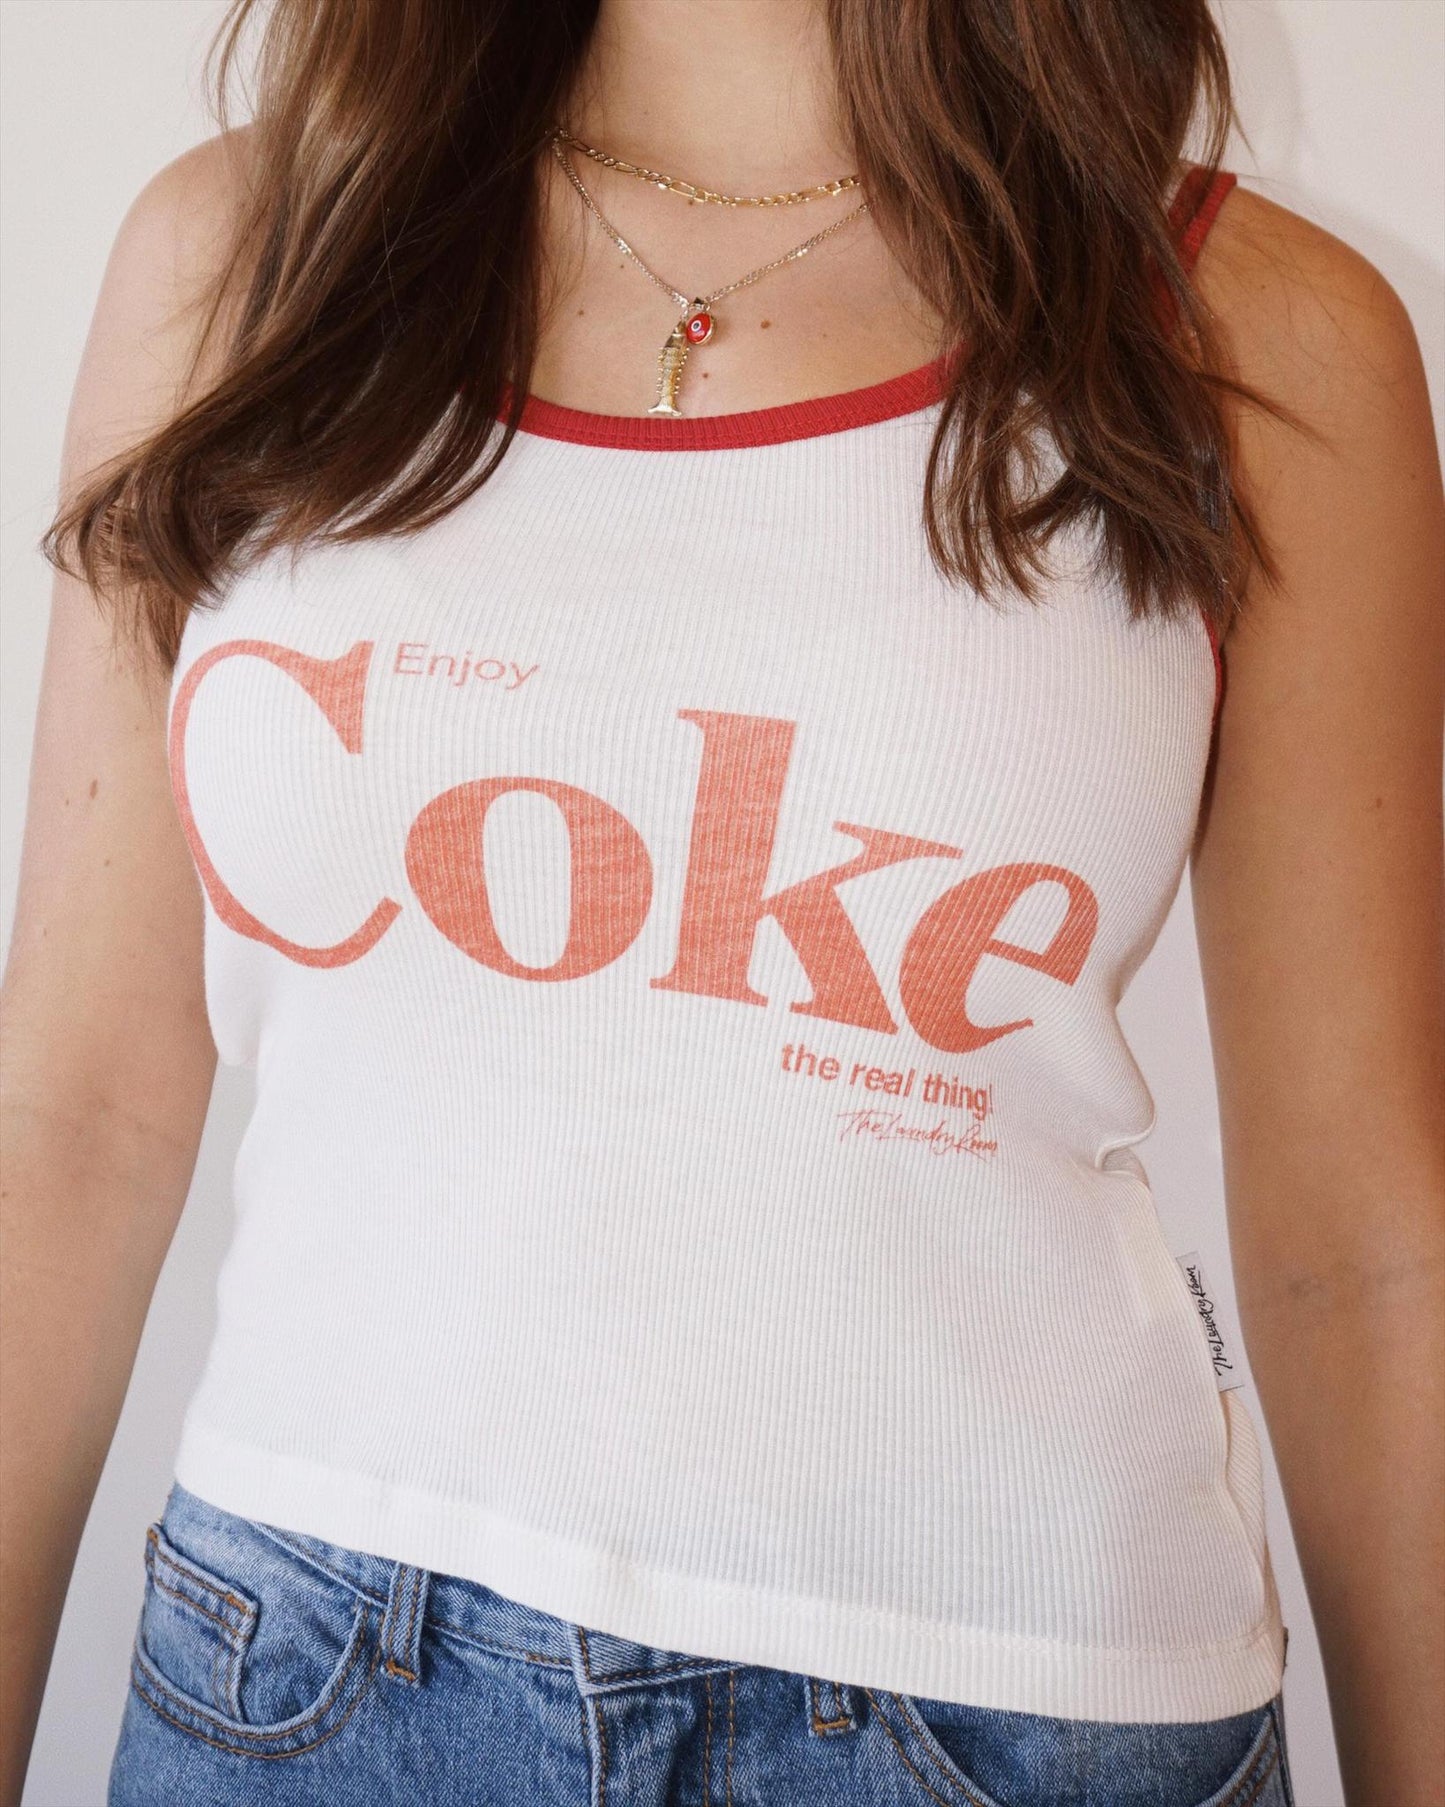 Enjoy Coke Tank